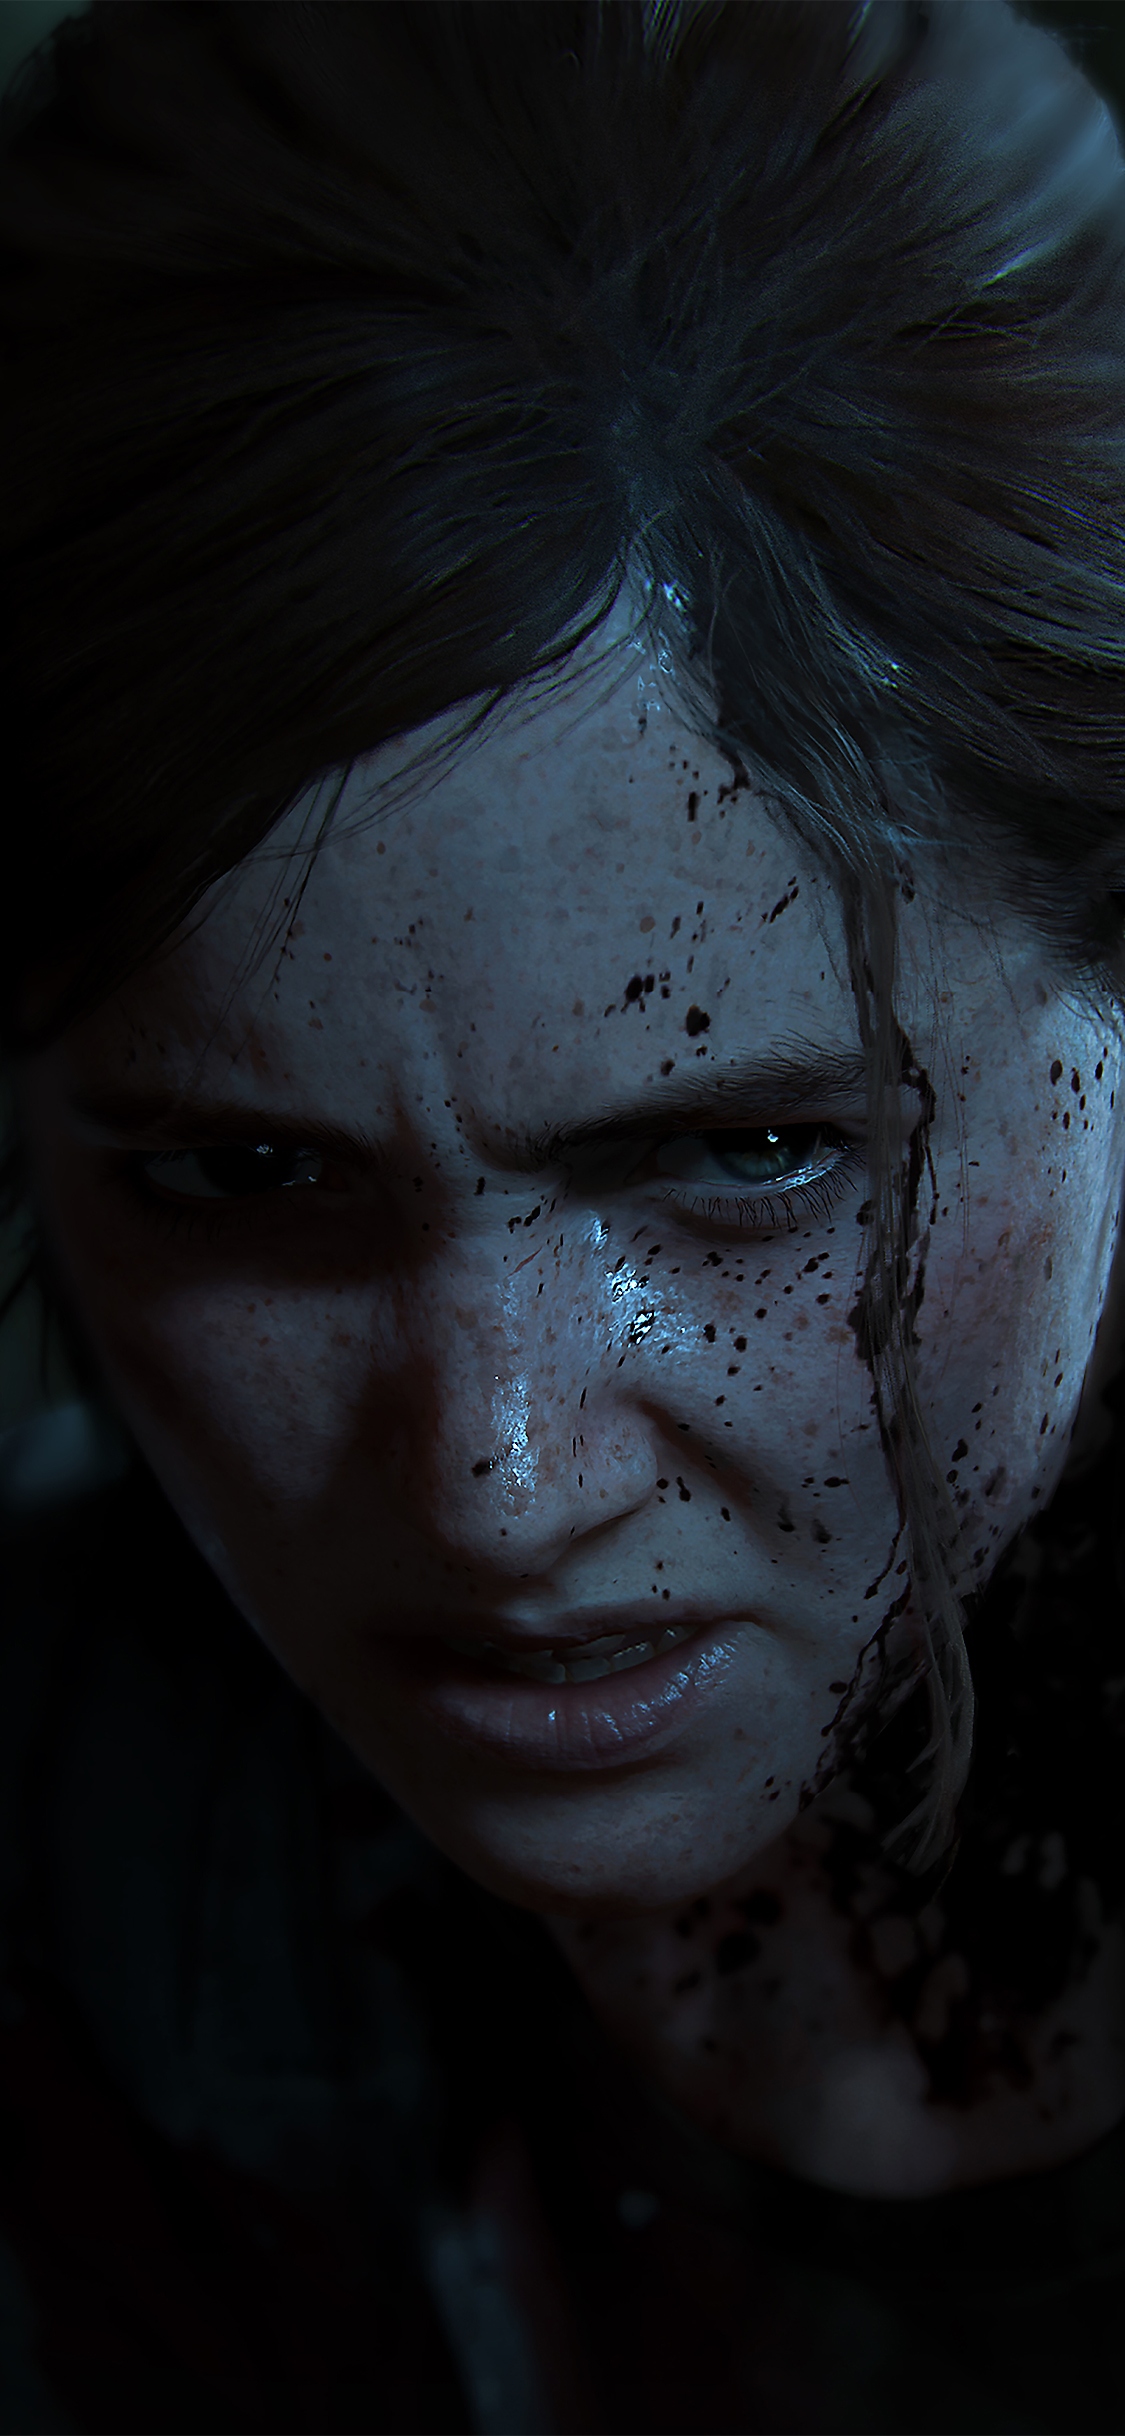 The Last of Us Part II, glavna ilustracija – iPhone X